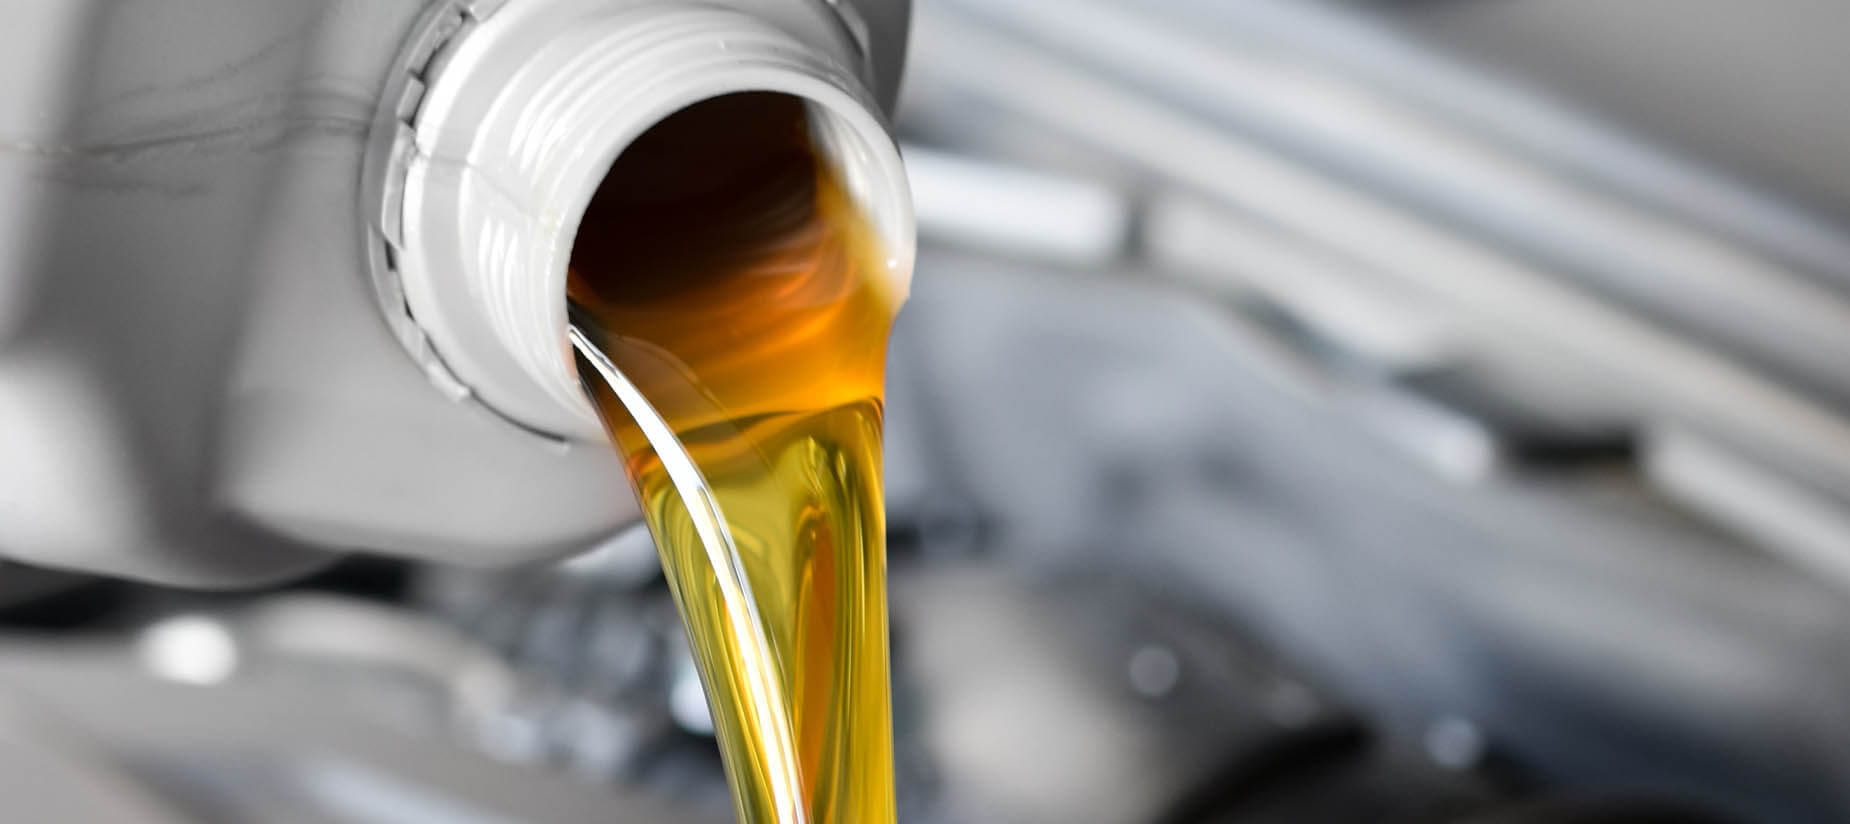 Additif pour huile moteur – qu'est-ce que c'est ?